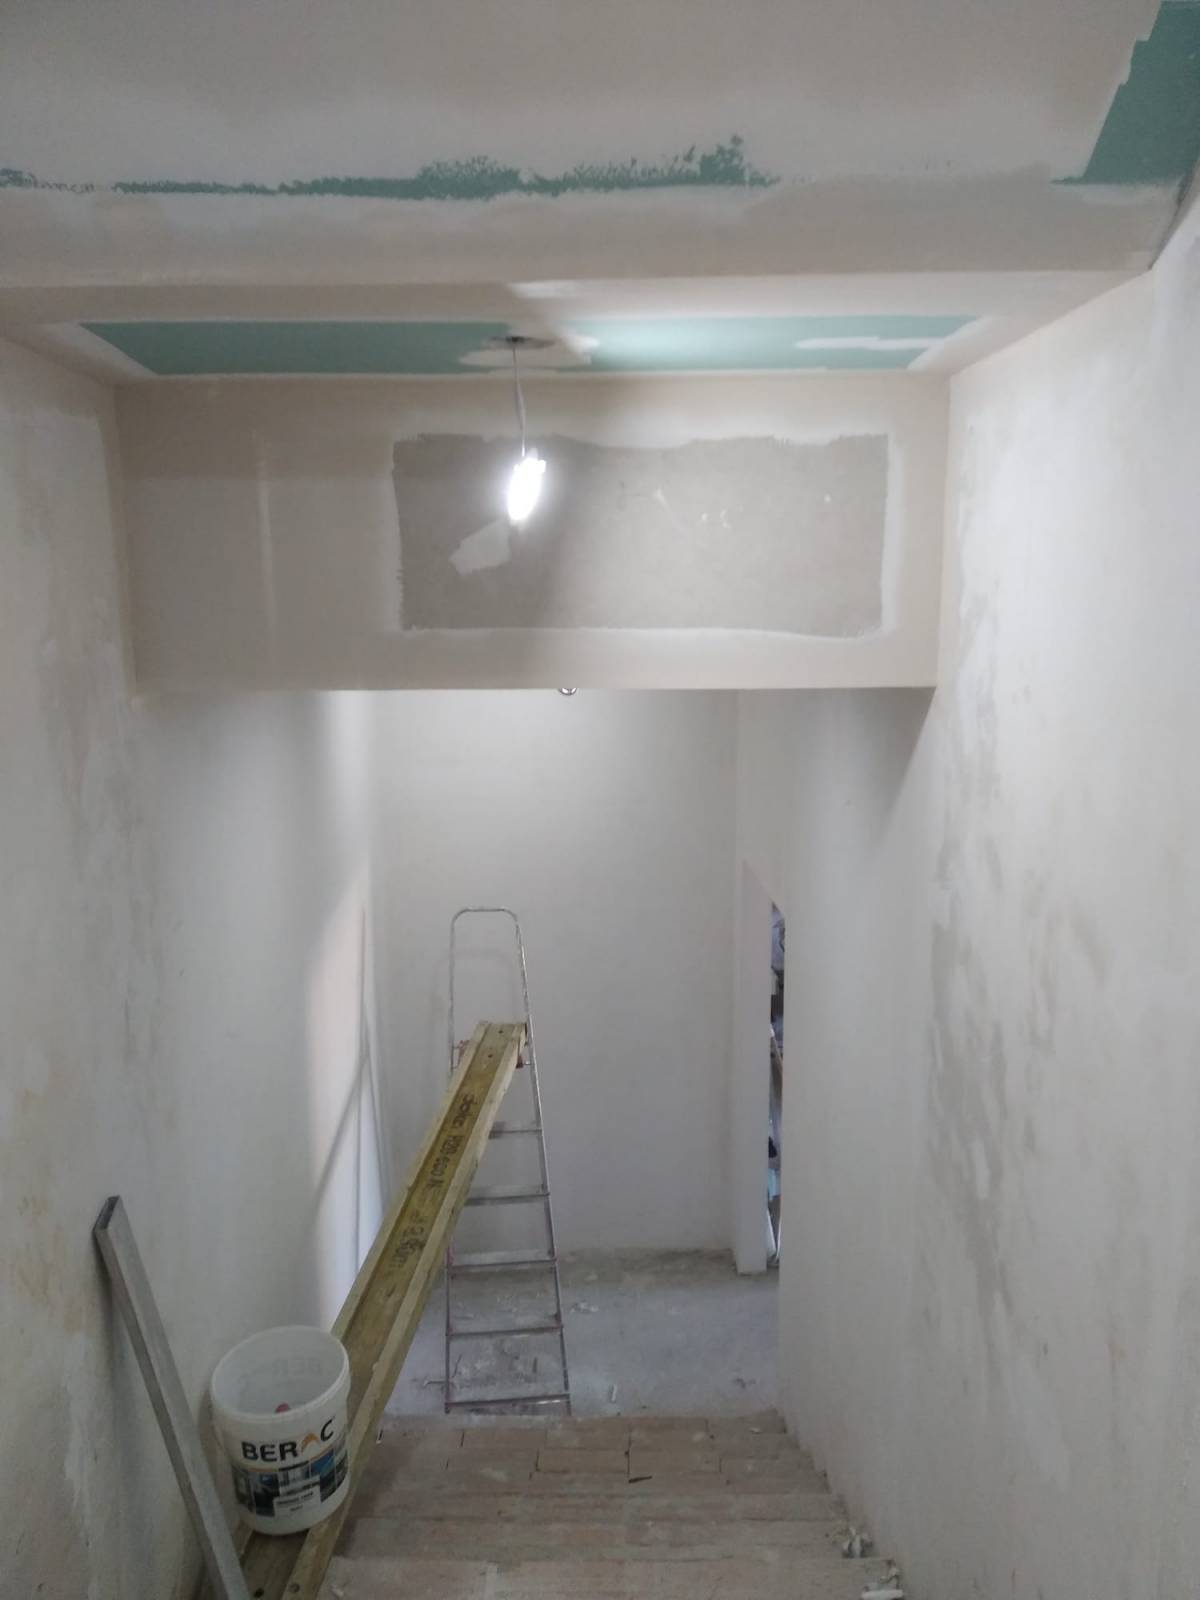 Construção e remodelação de interiores e impermeabilização cortiça projetada exteriores - Viseu - Instalação de Alcatifa